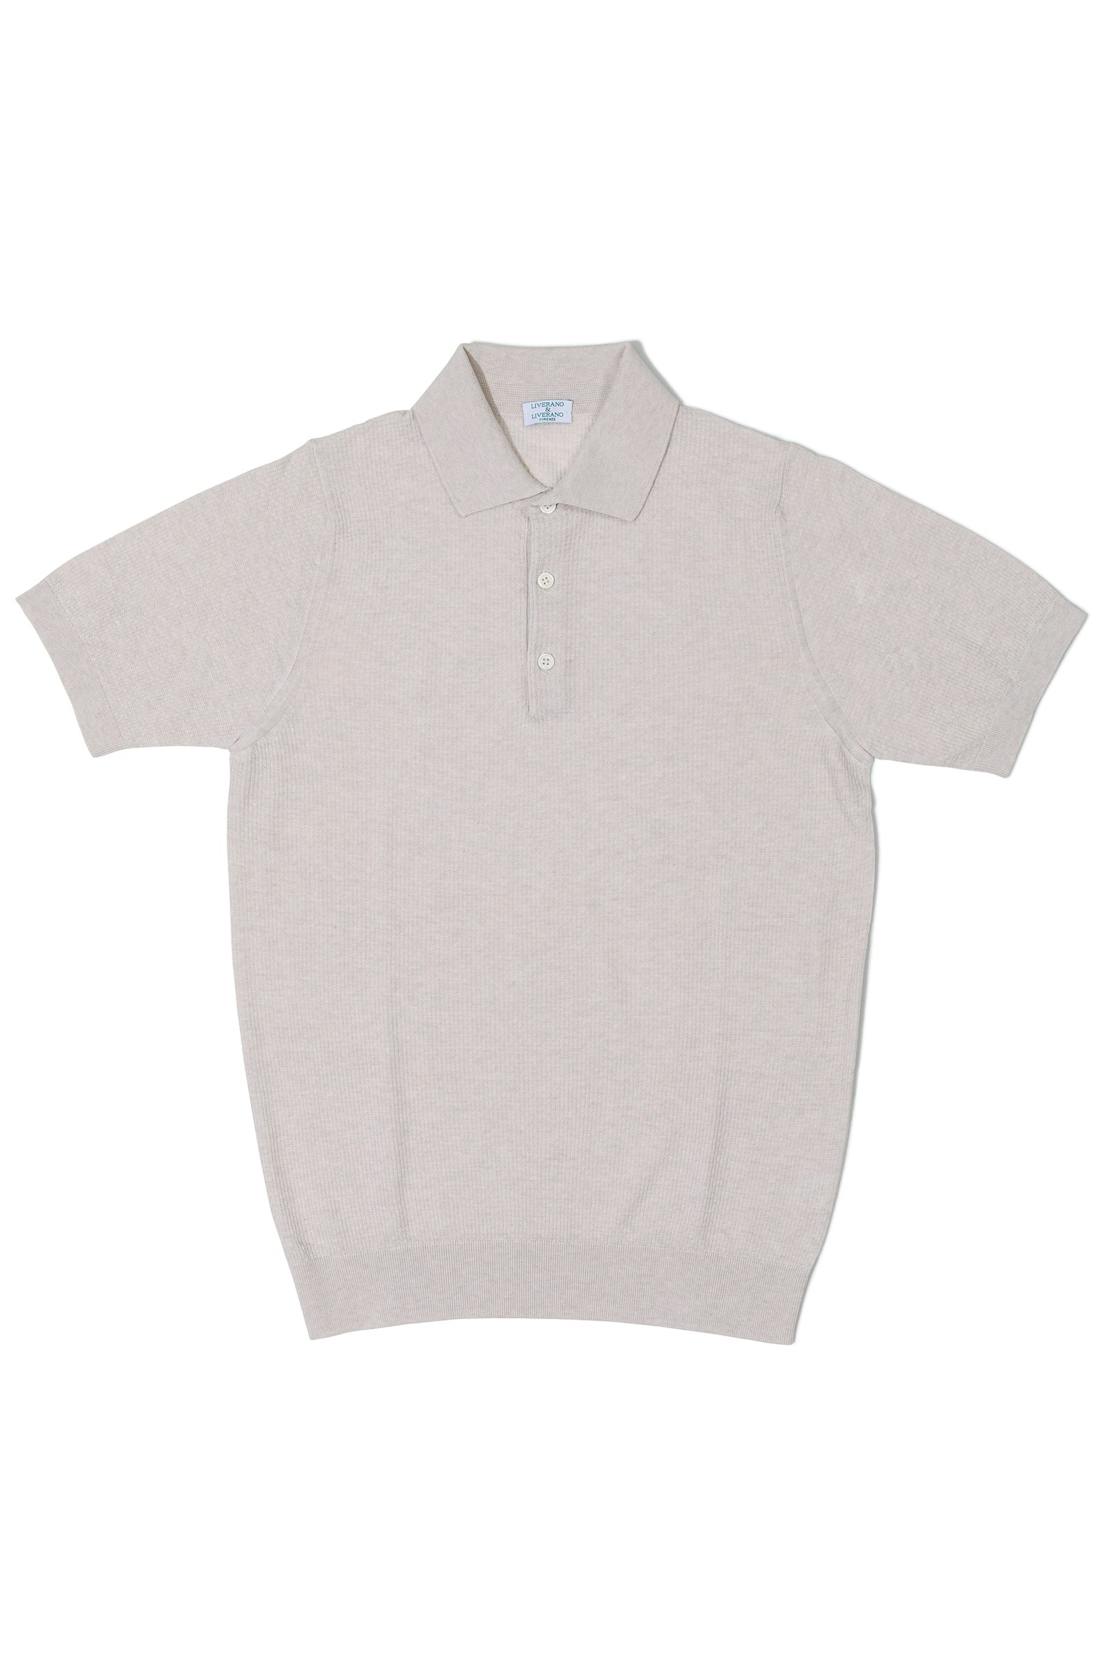 Liverano Ecru Cotton Short Sleeve Spread Collar Polo